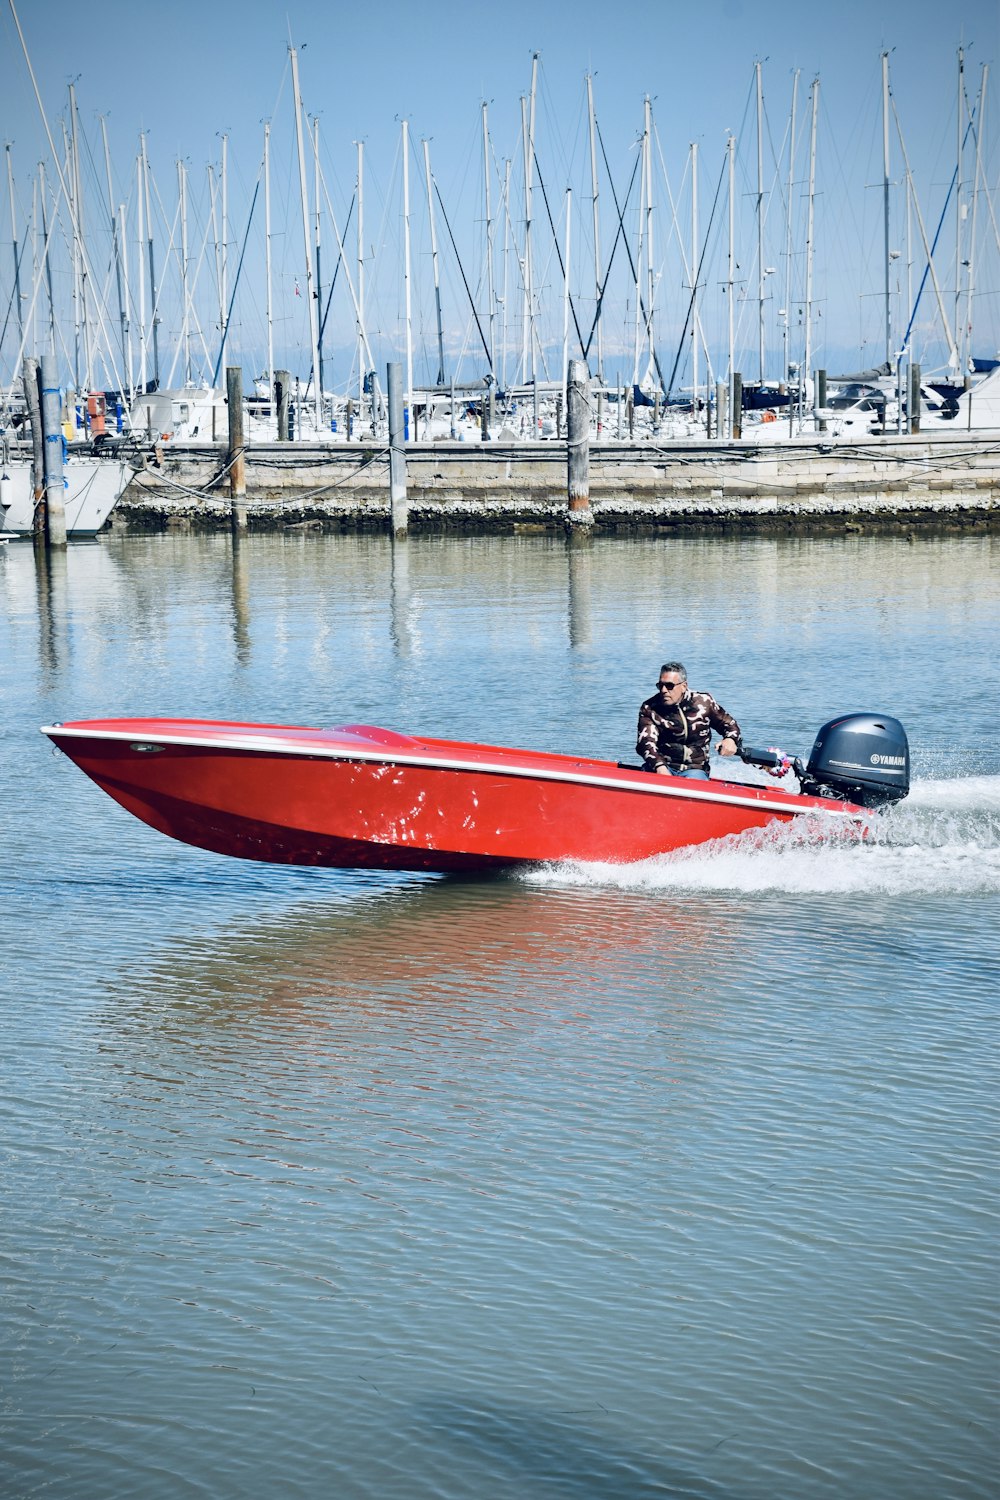 Ein Mann fährt ein rotes Schnellboot auf einem Gewässer